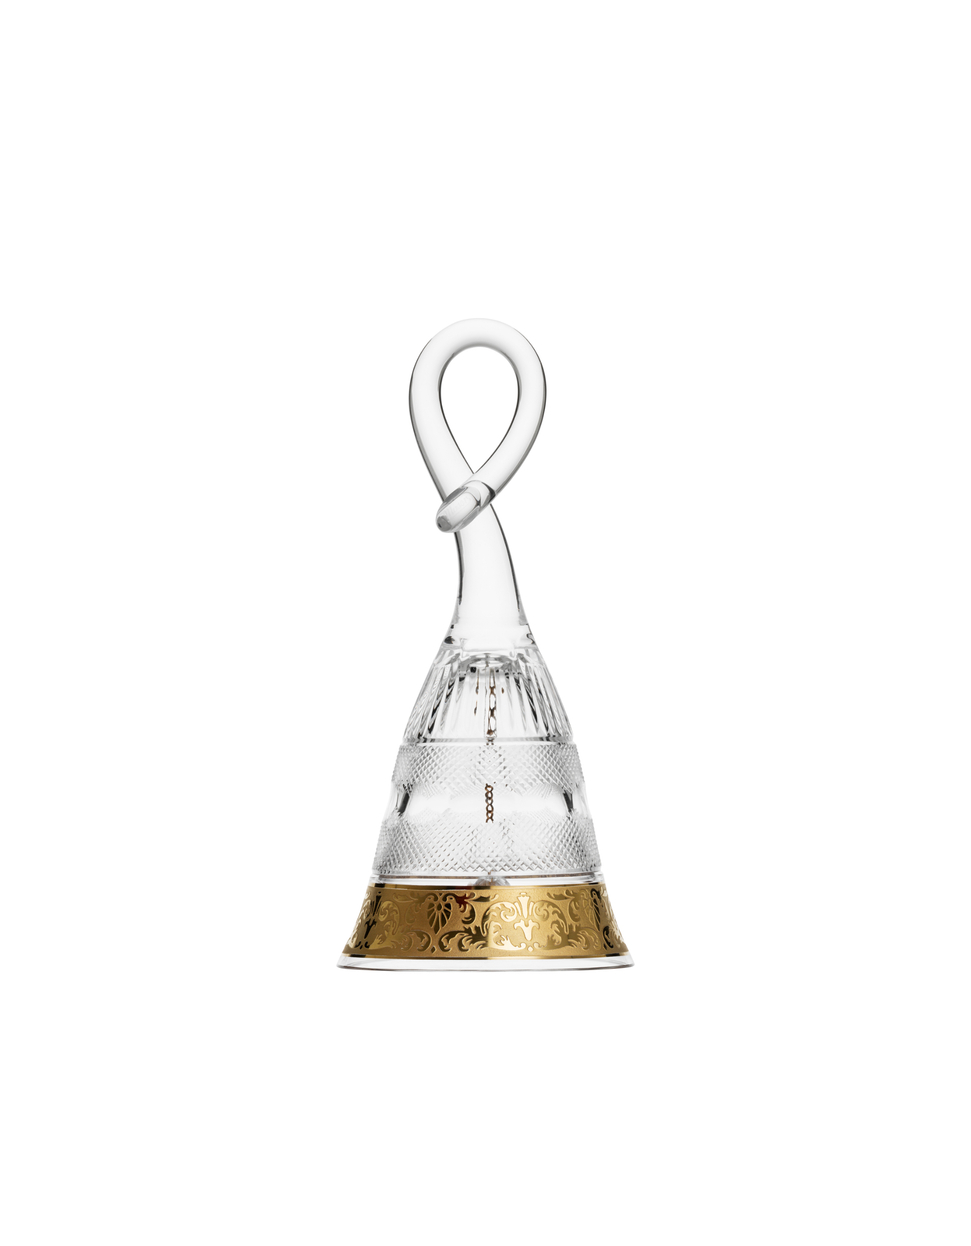 Splendid bell, 14.5 cm